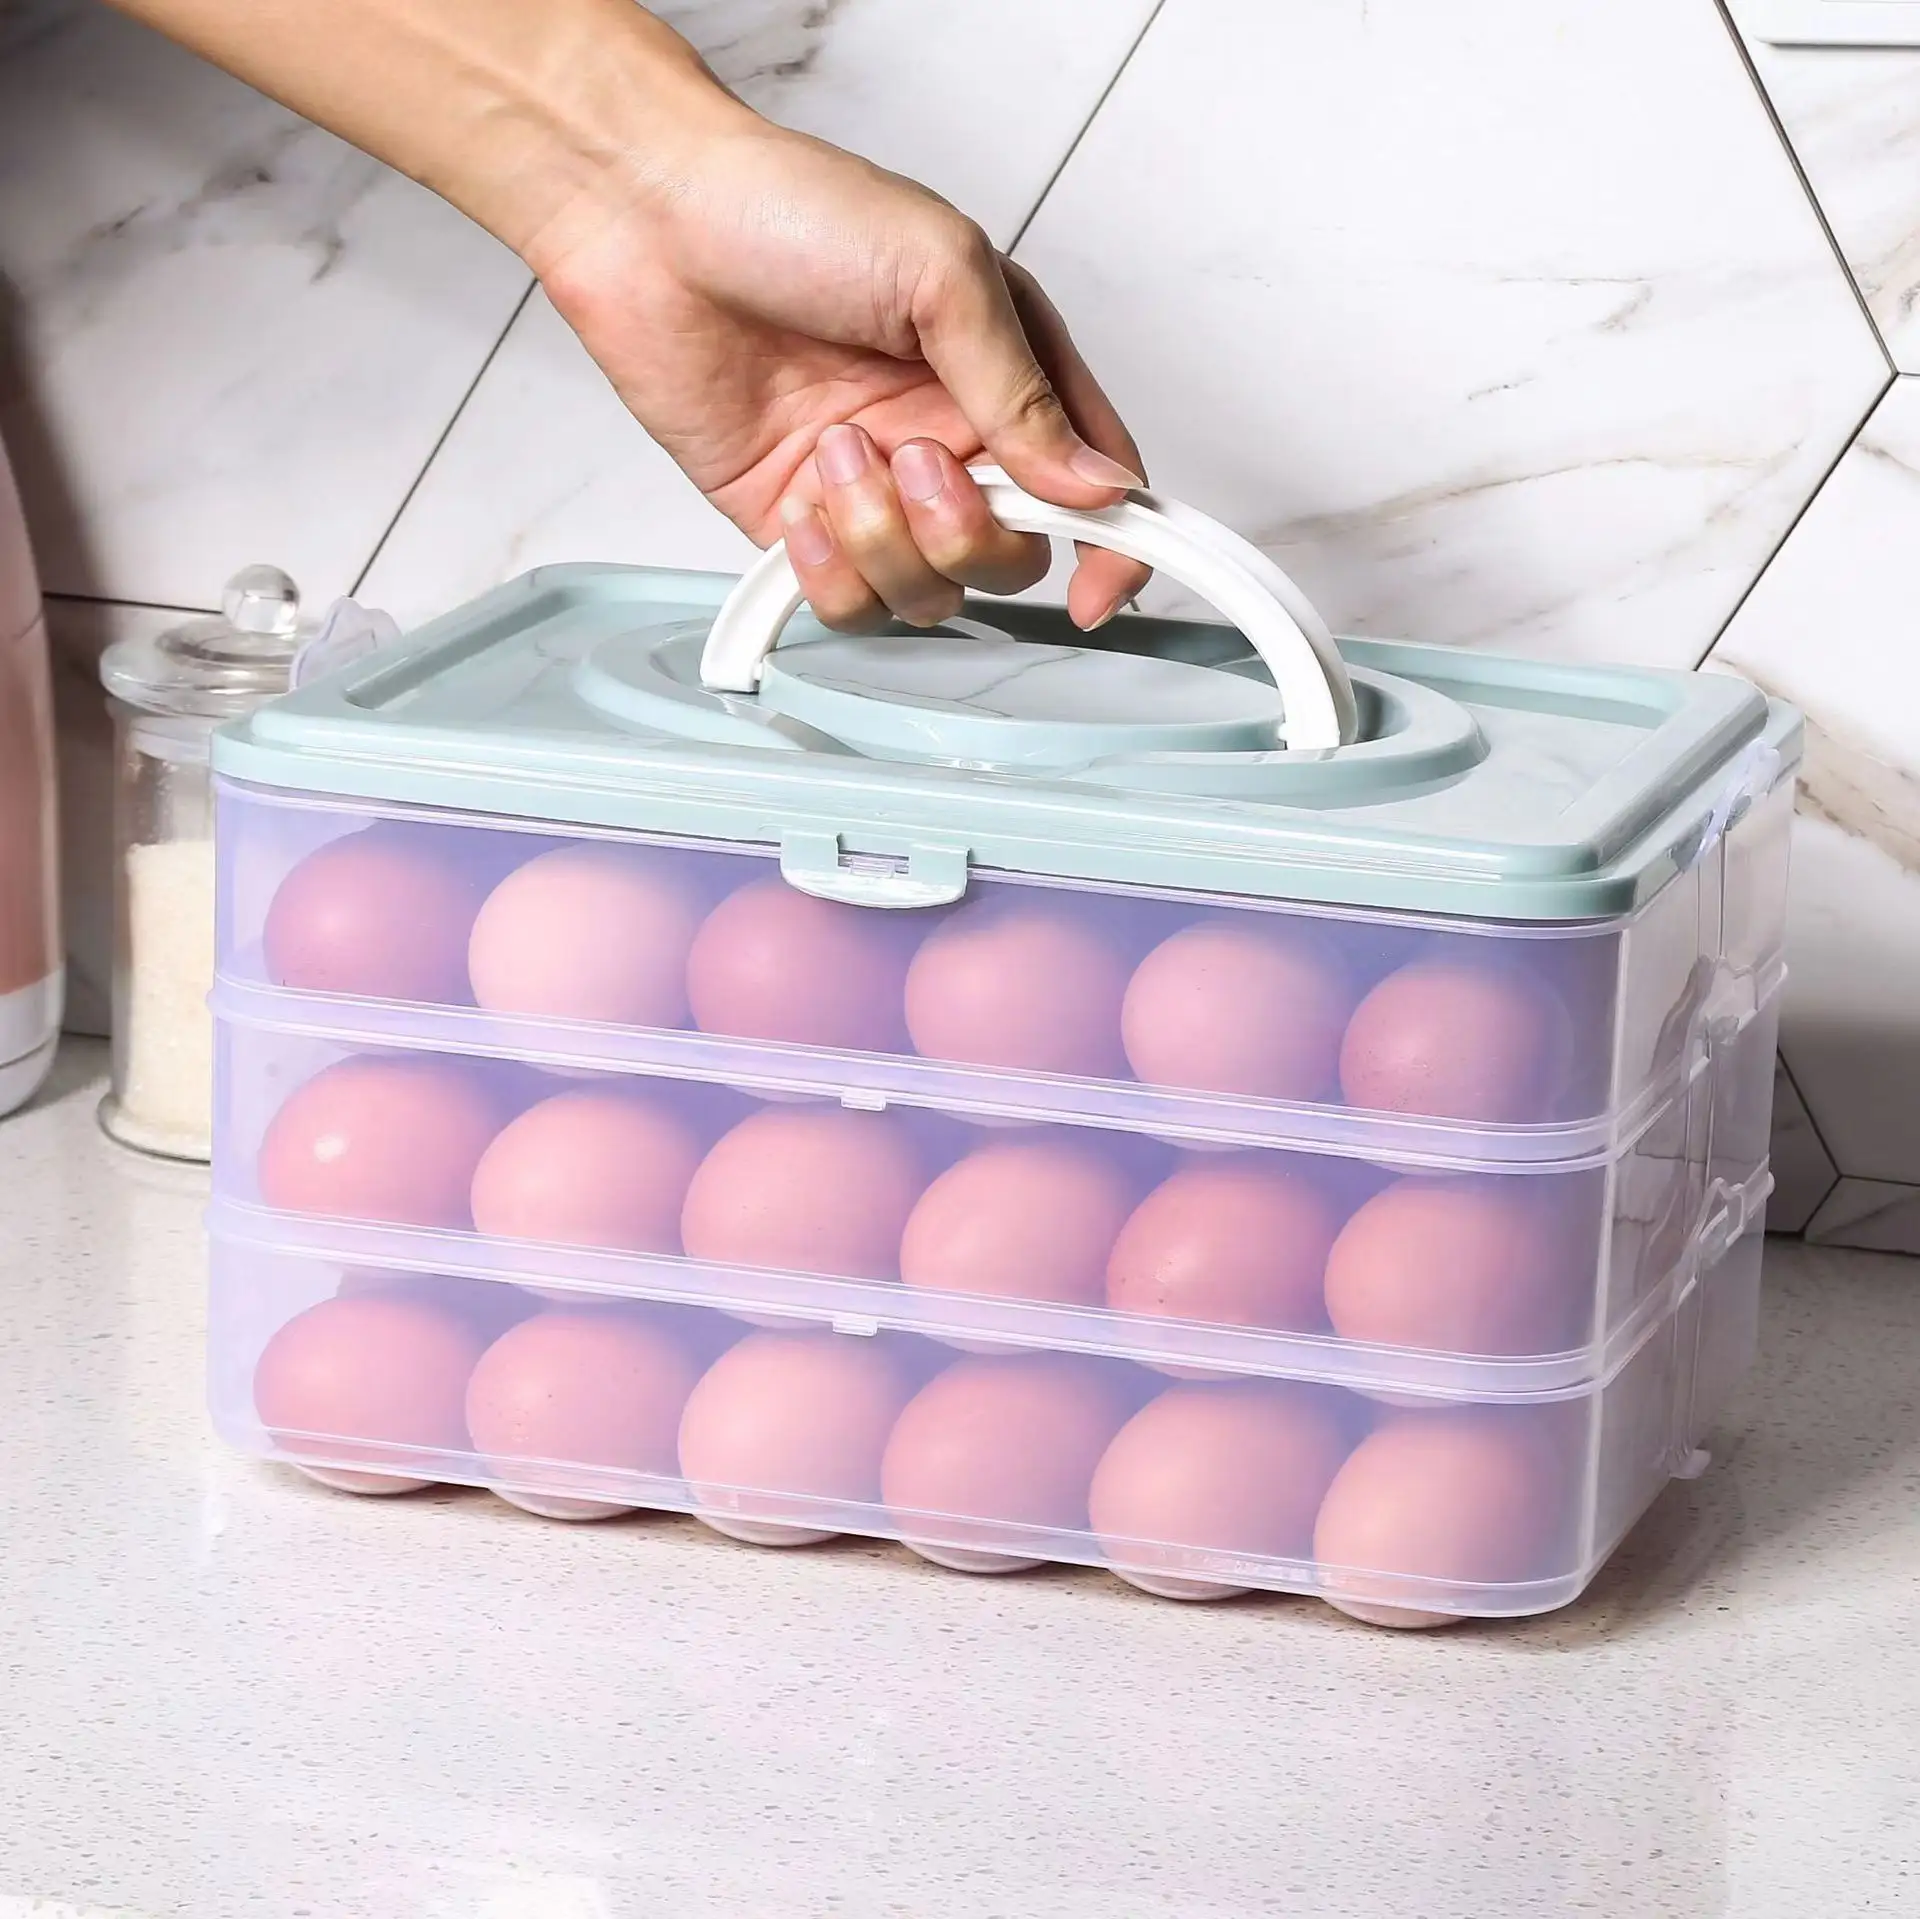 Kotak penyimpanan telur kulkas besar, Portabel 24 baki telur dapur tahan debu dengan penutup